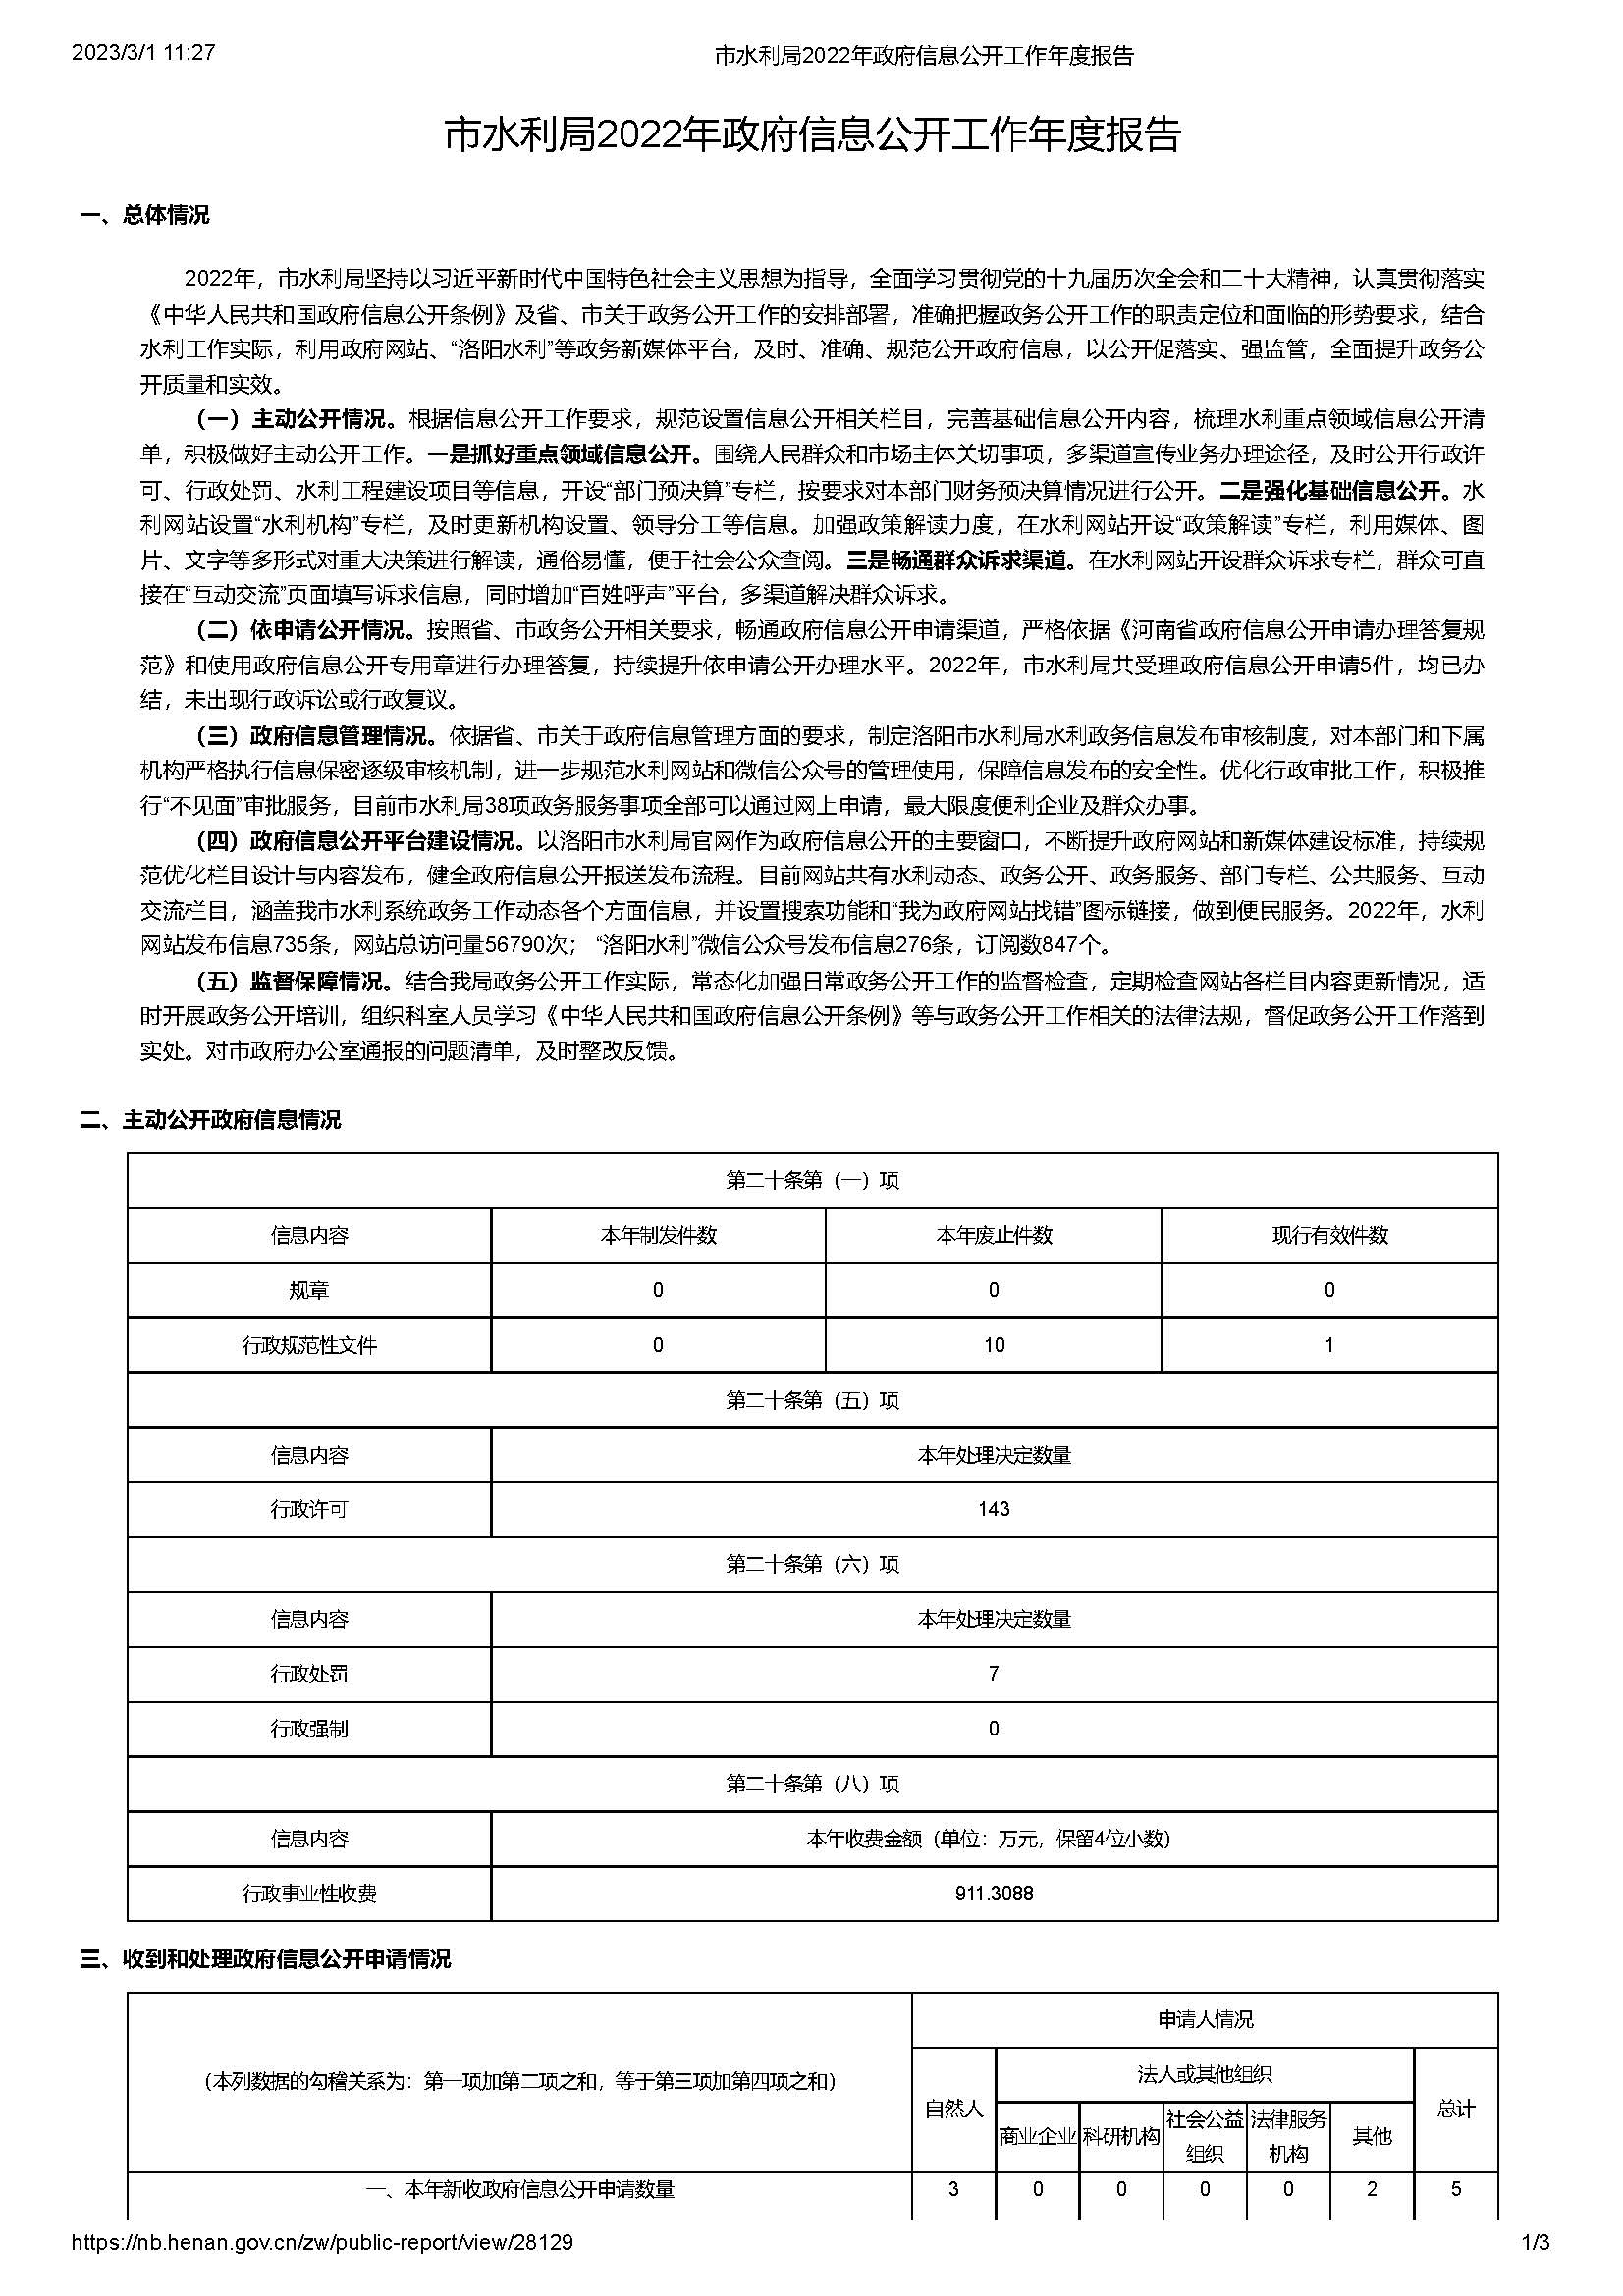 洛阳市水利局2022年政府信息公开工作年度报告(图1)